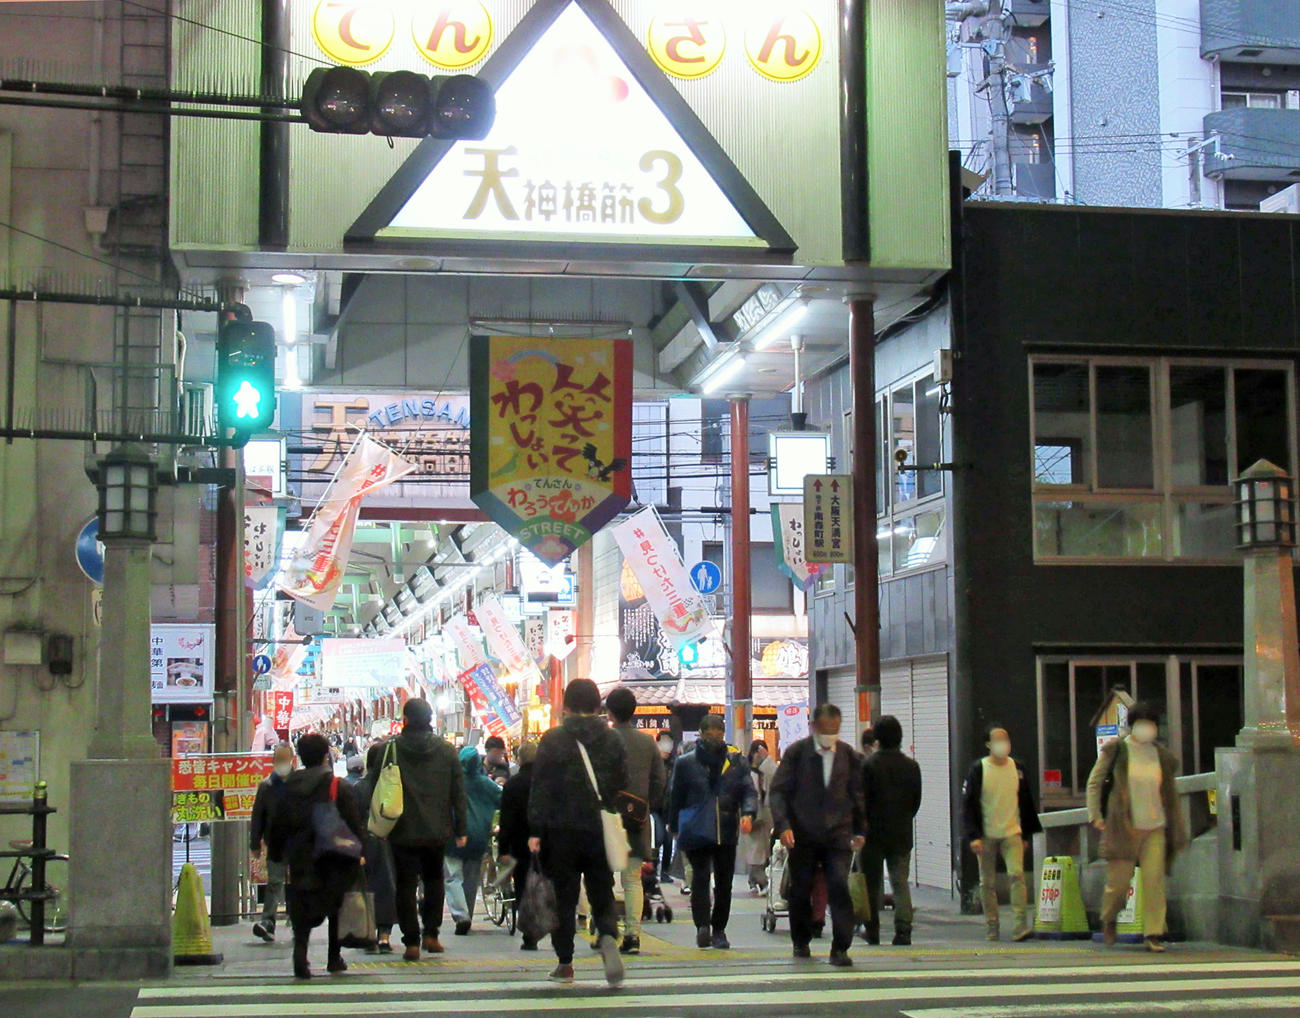 「大阪モデル」の赤信号が点灯して初の週末を迎えた天神橋筋商店街の様子（撮影・星名希実）